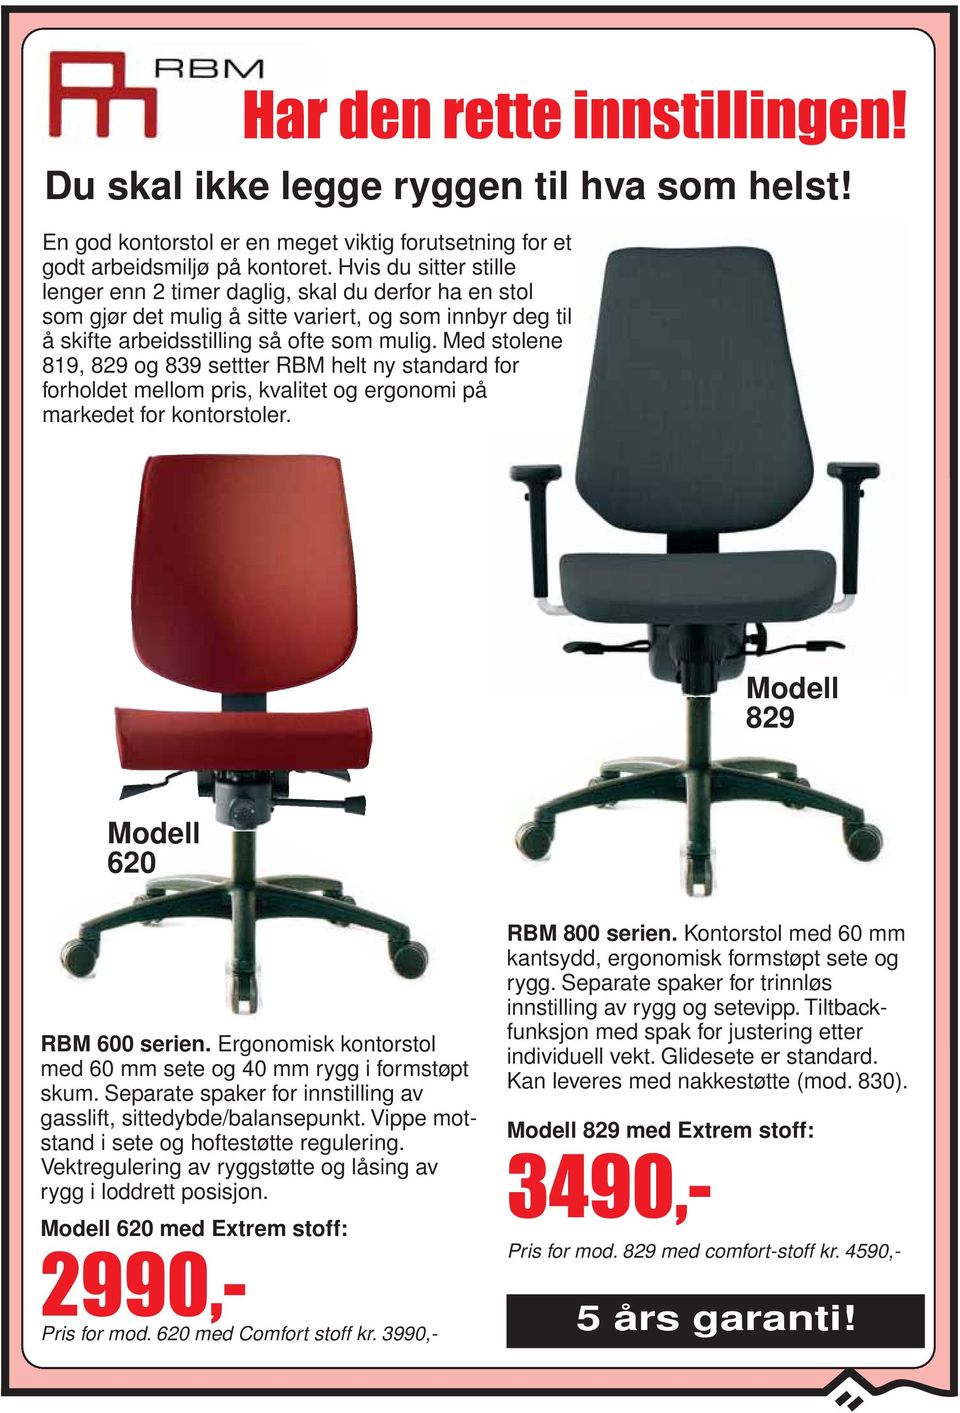 Med stolene 819, 829 og 839 settter RBM helt ny standard for forholdet mellom pris, kvalitet og ergonomi på markedet for kontorstoler. Modell 829 Modell 620 RBM 600 serien.